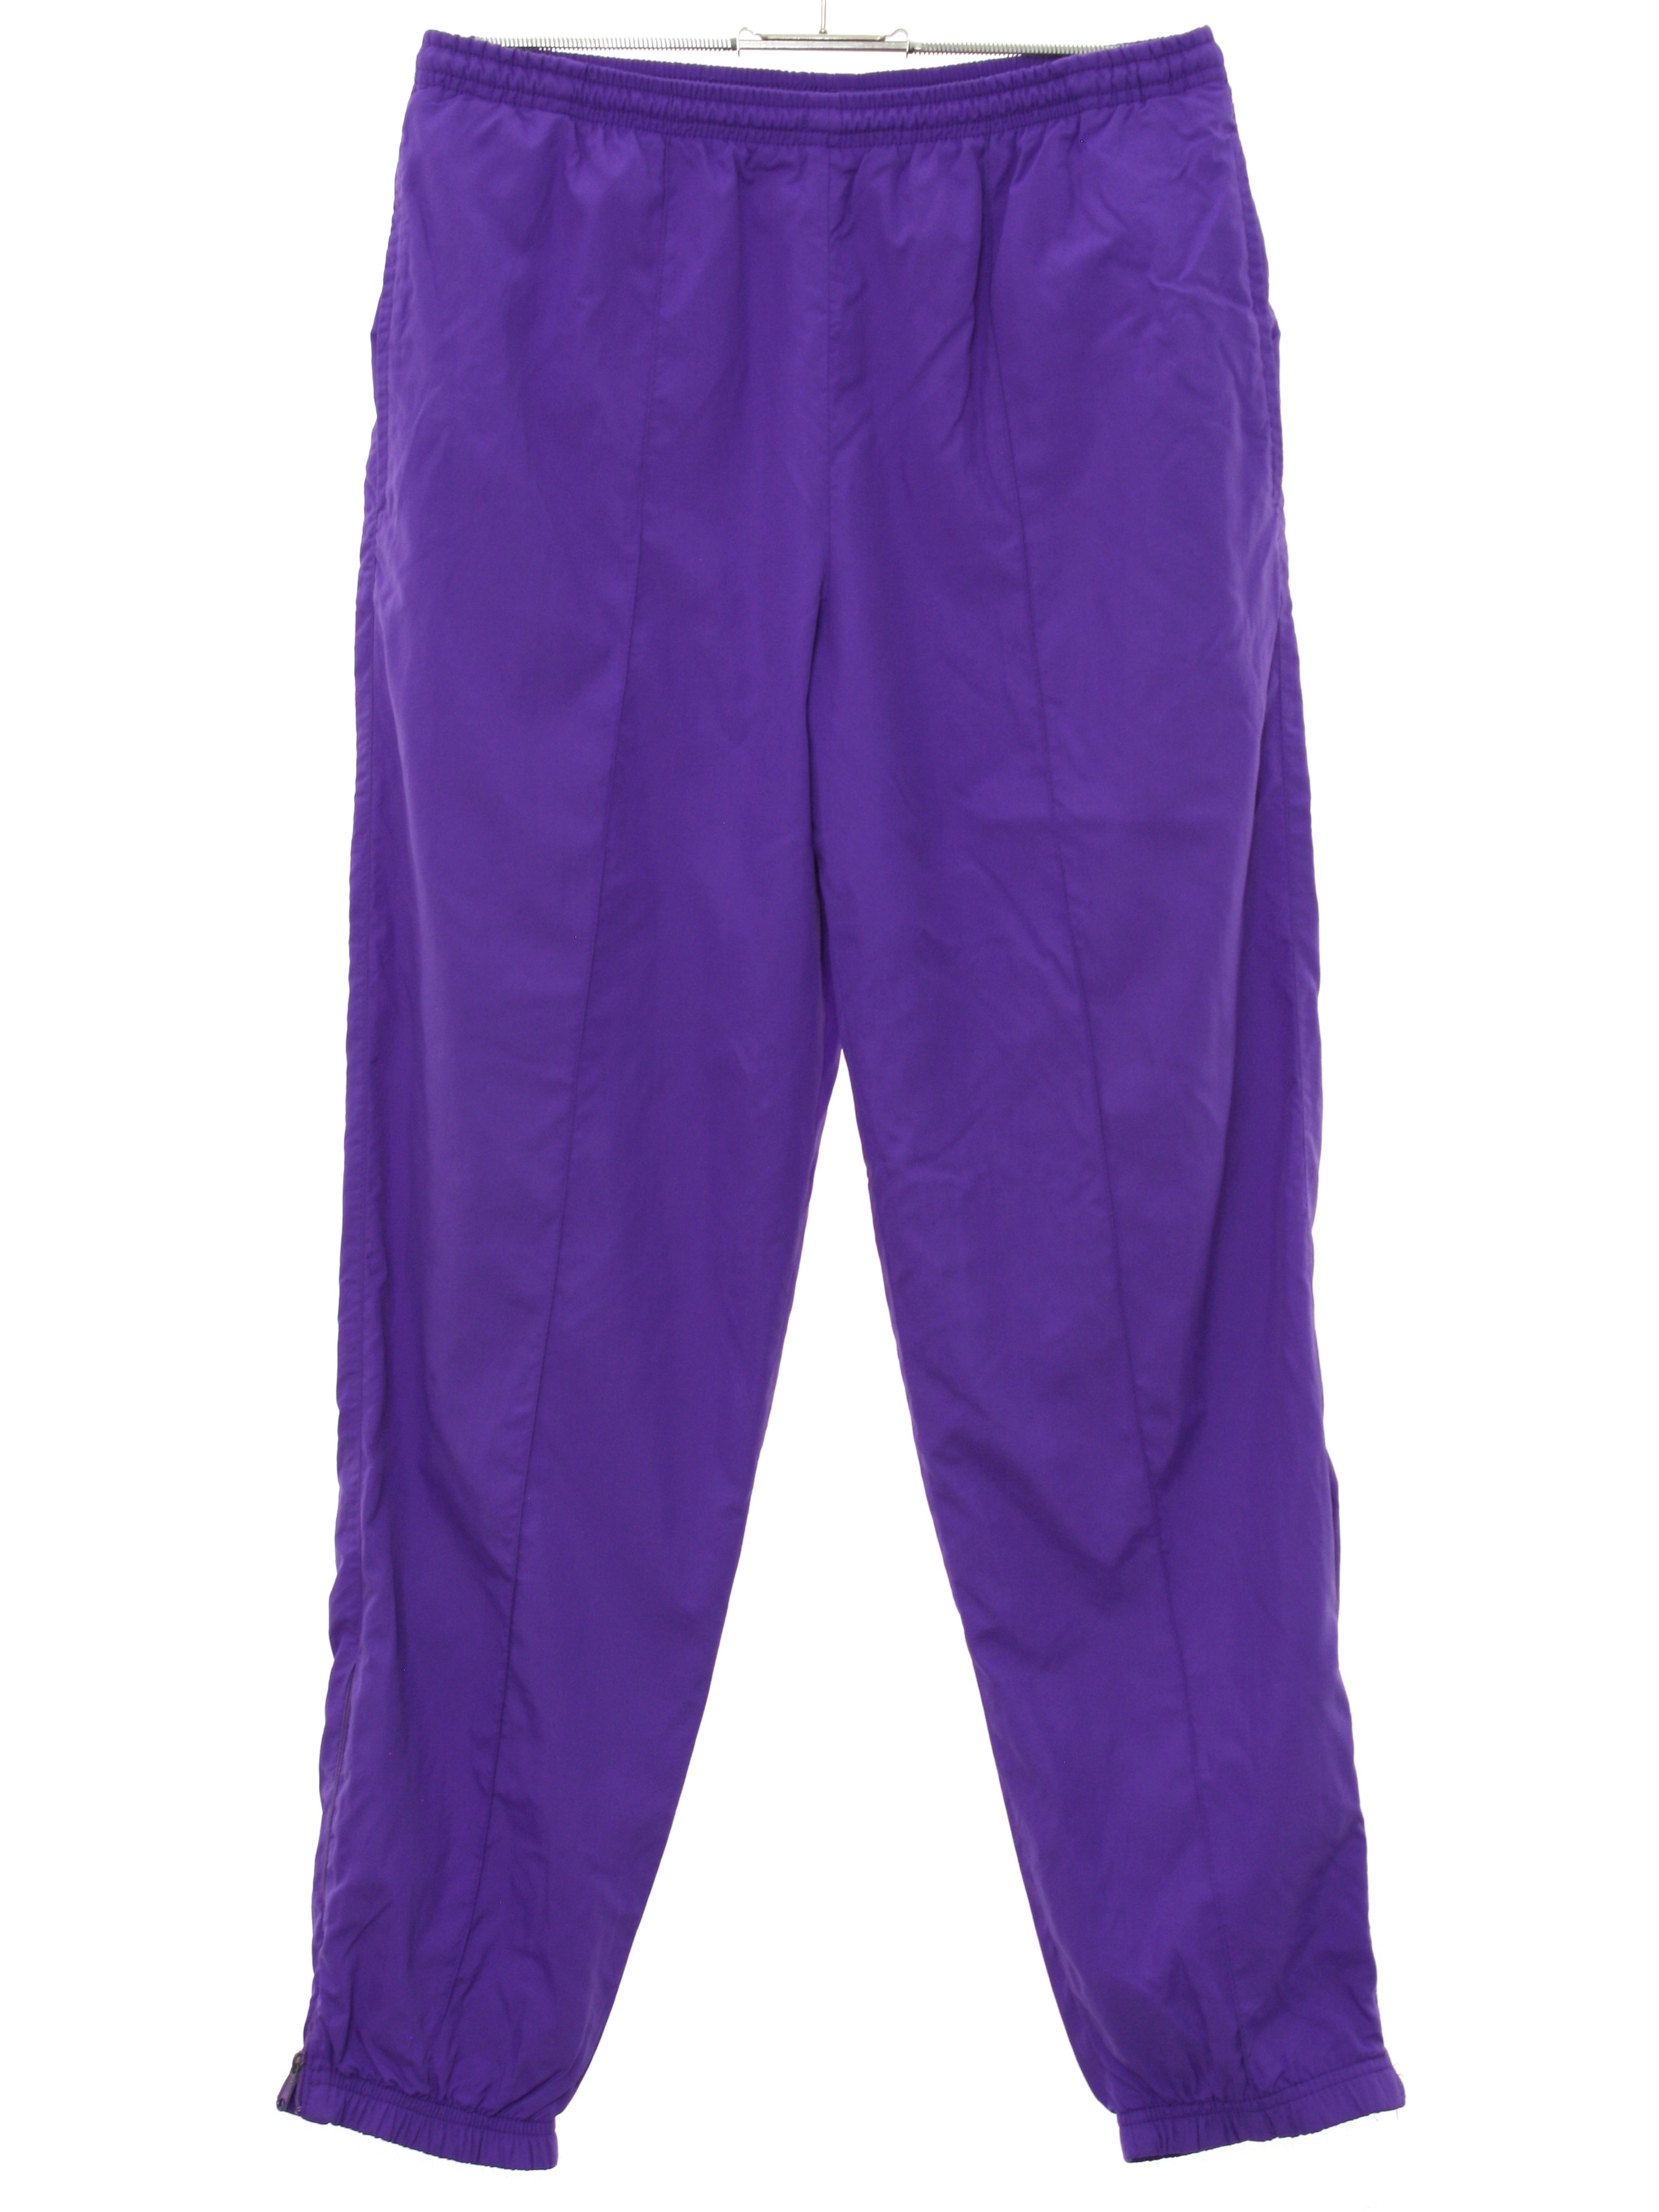 1980s Head Sportswear Pants: 80s -Head Sportswear- Womens purple